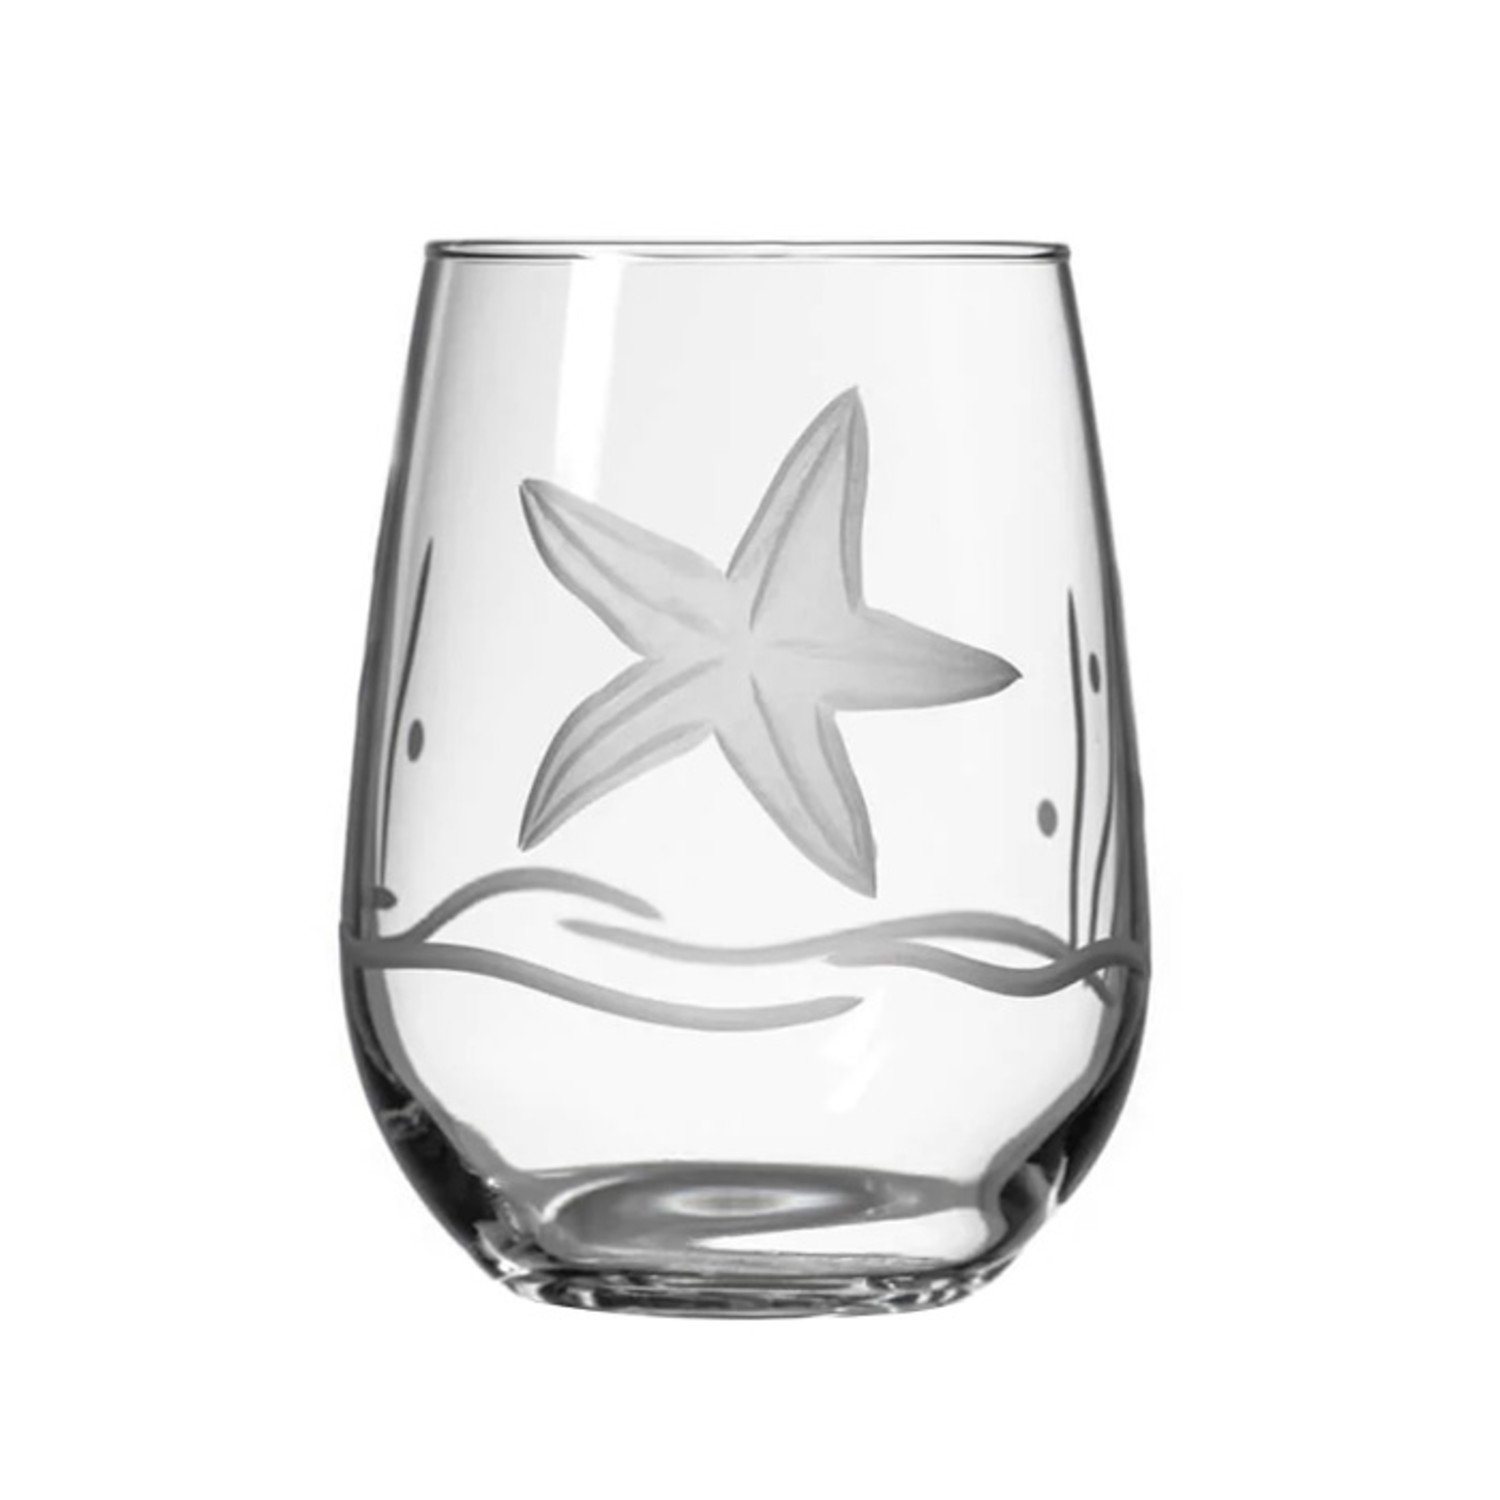 https://cdn.shoplightspeed.com/shops/662163/files/51885573/1500x4000x3/etched-stemless-wine-glass.jpg